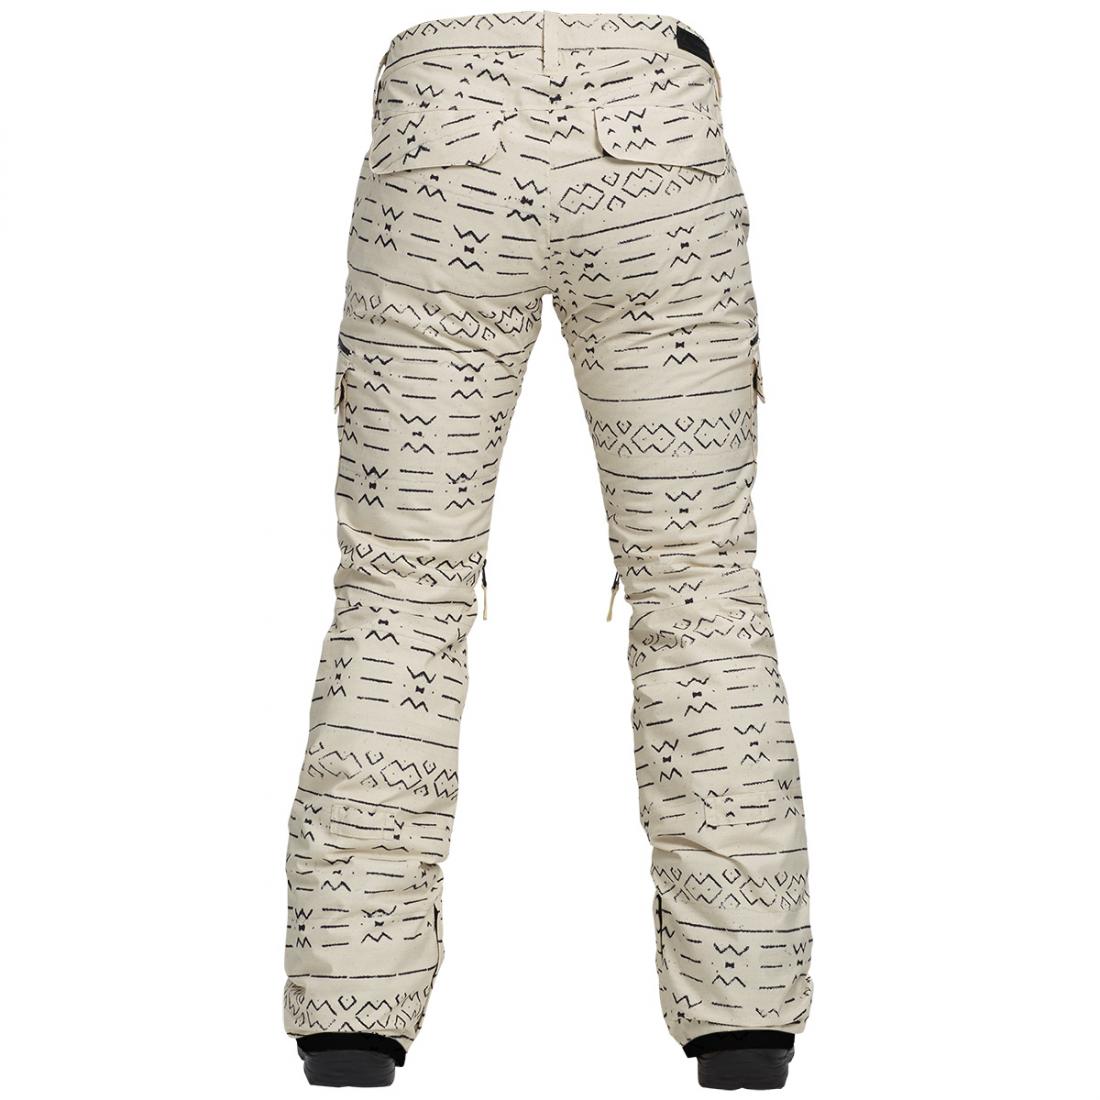 Штаны для сноуборда Burton Gloria Insulated Pant купить в Boardshop №1